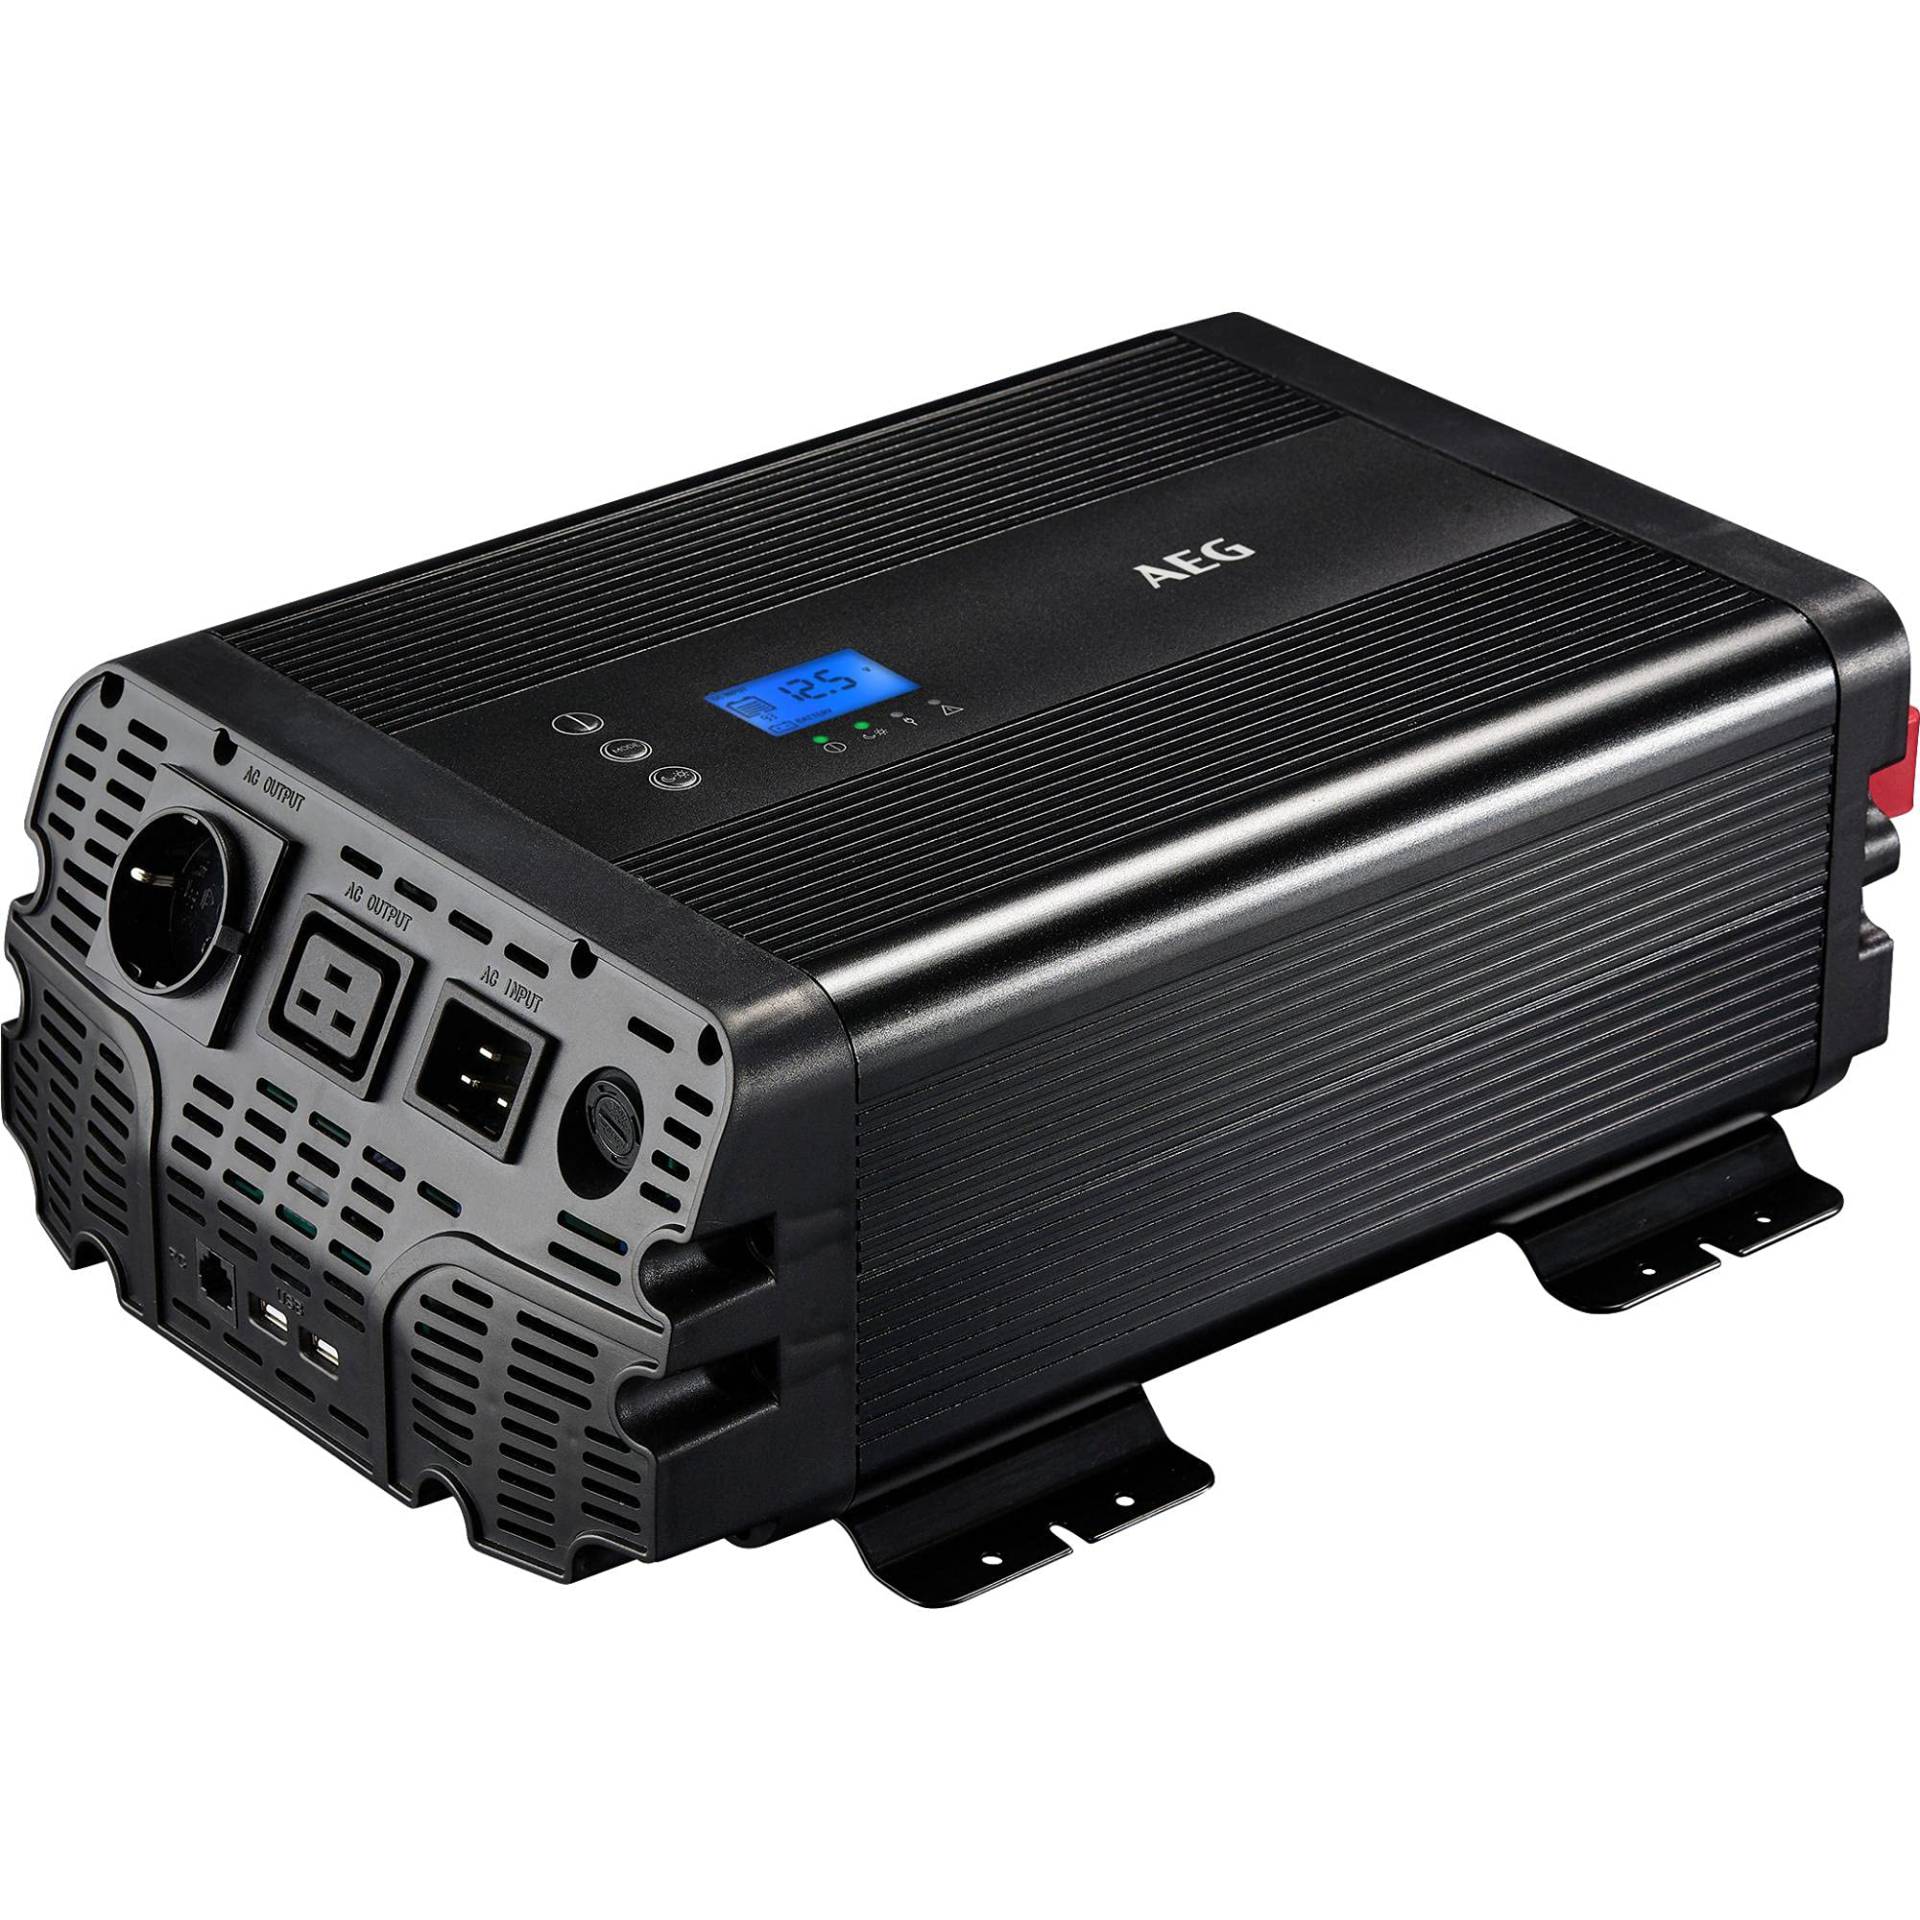 AEG Automotive Sinus-Spannungswandler 1500 W, 12 V DC auf 230 V AC, mit App-Steuerung, Netzvorrangschaltung, Lüftersteuerung, Wechselrichter Inverter von AEG